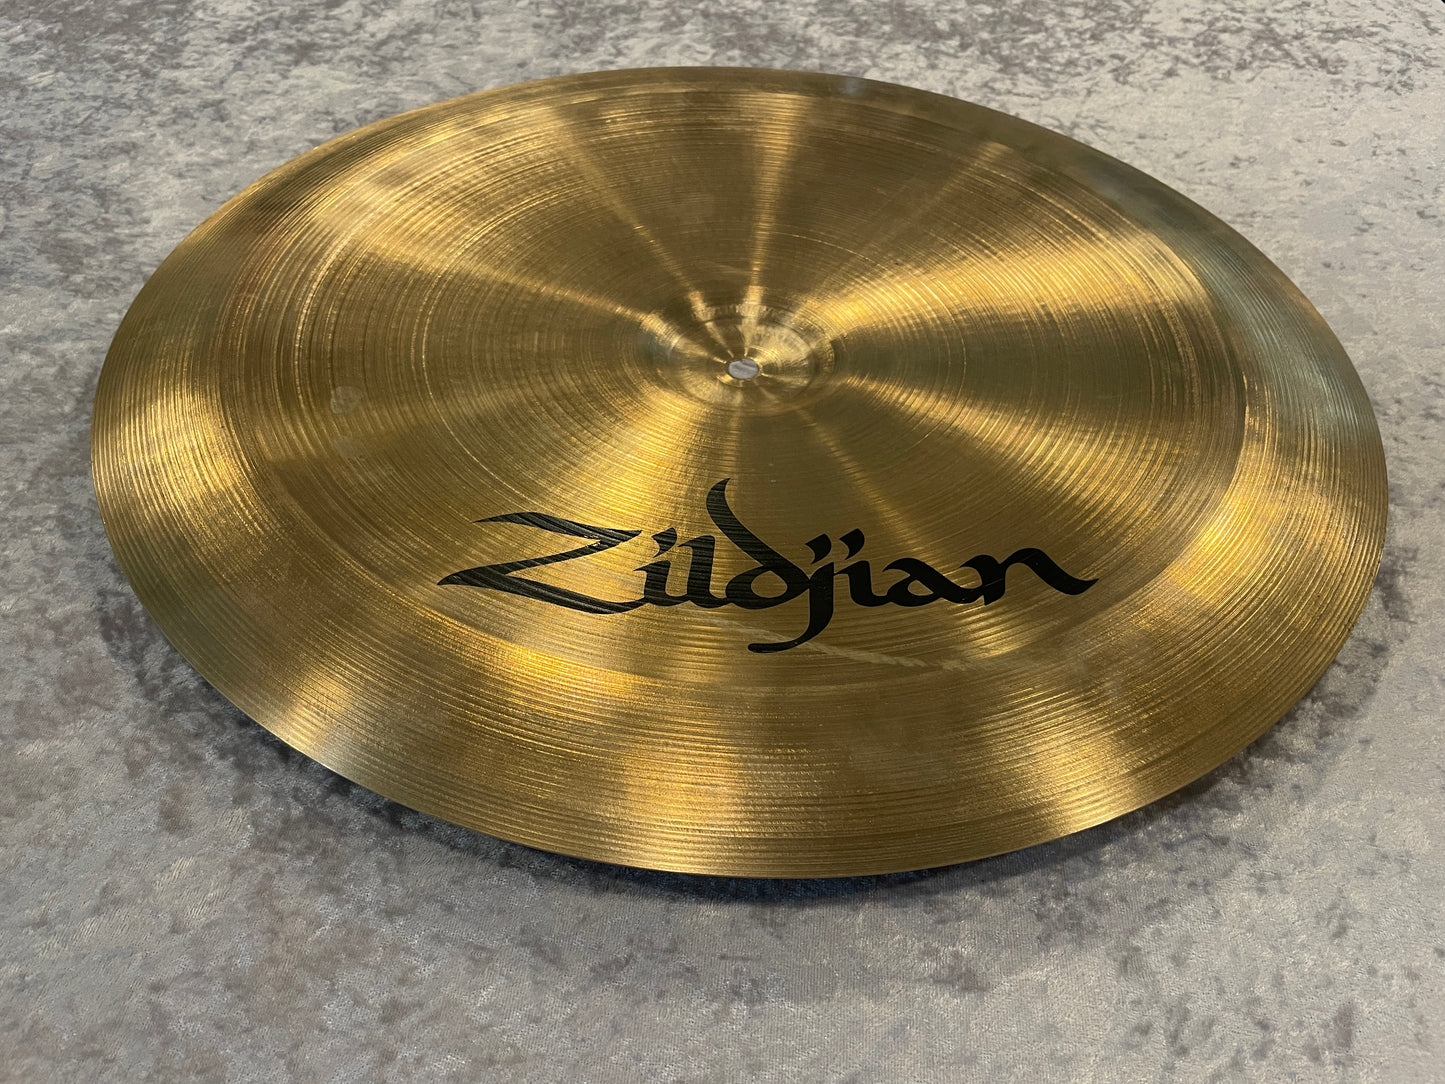 18" Zildjian A 1980s China Boy Low Cymbal 1266g